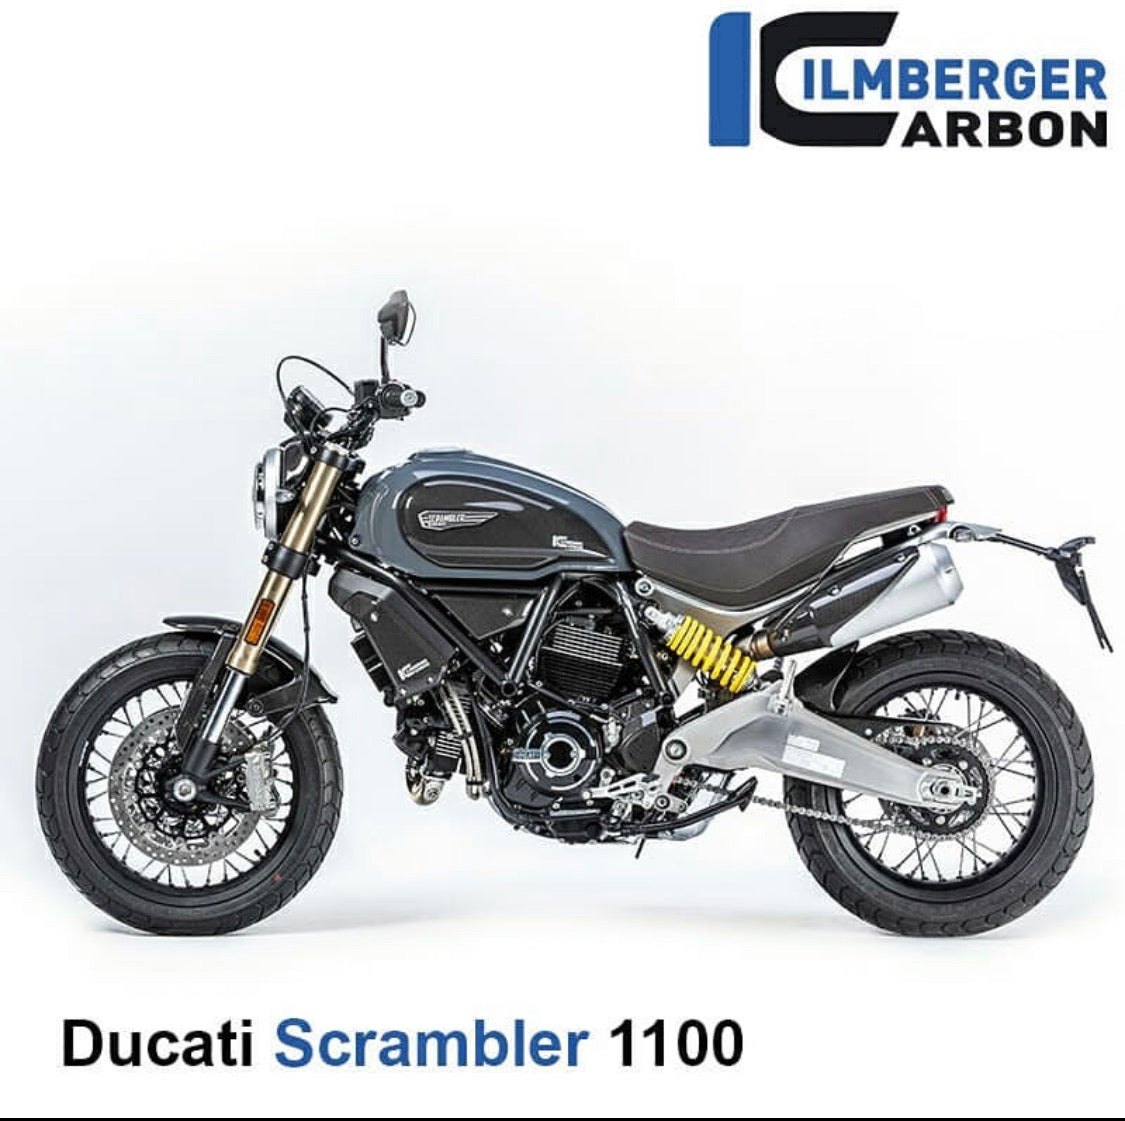 Ducati Scrambler 1100 - Averys Motorcycles